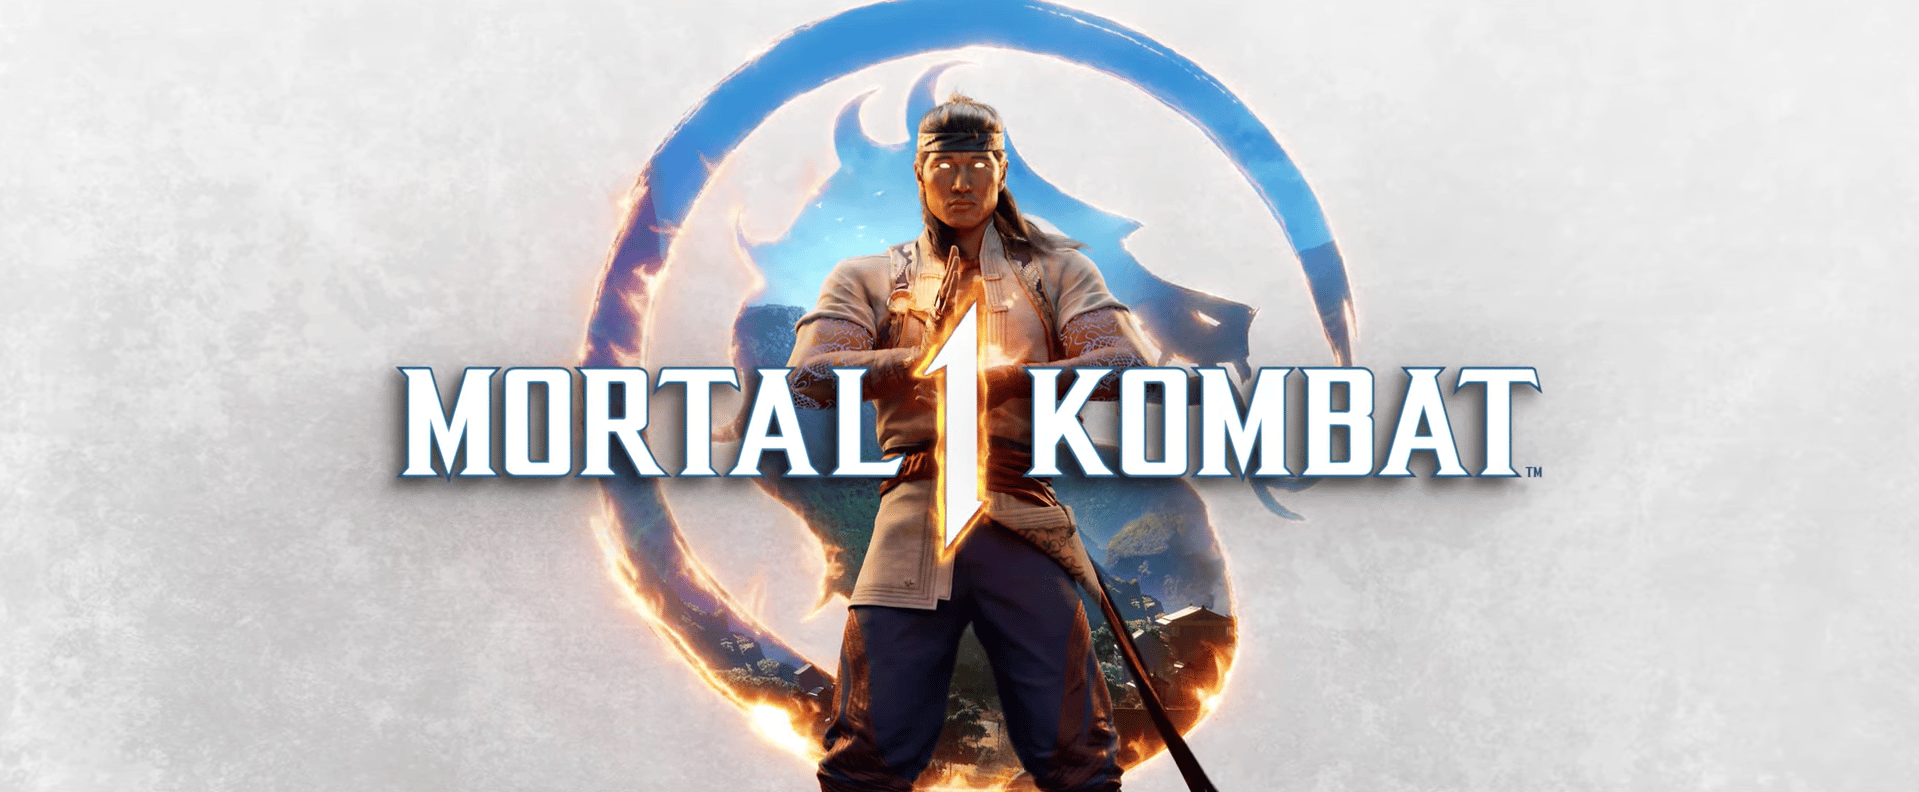 Mortal Kombat 1 - Trois personnages jouables dévoilés en vidéo - GEEKNPLAY Home, News, Nintendo Switch, PC, PlayStation 5, Xbox Series X|S